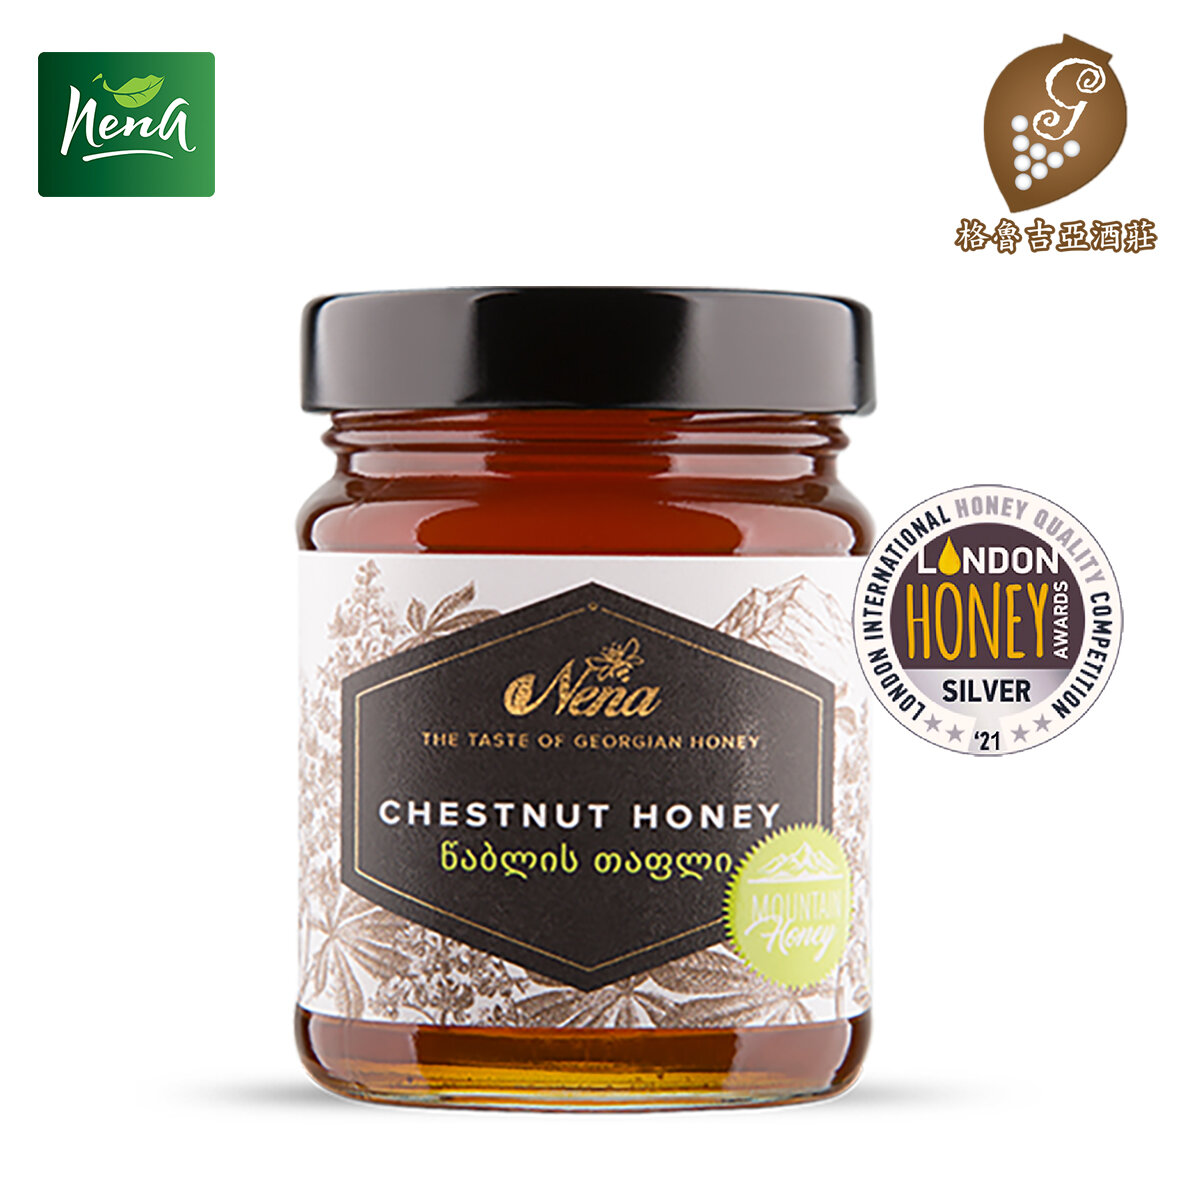 Nena Chestnut Honey 350g - Georgia